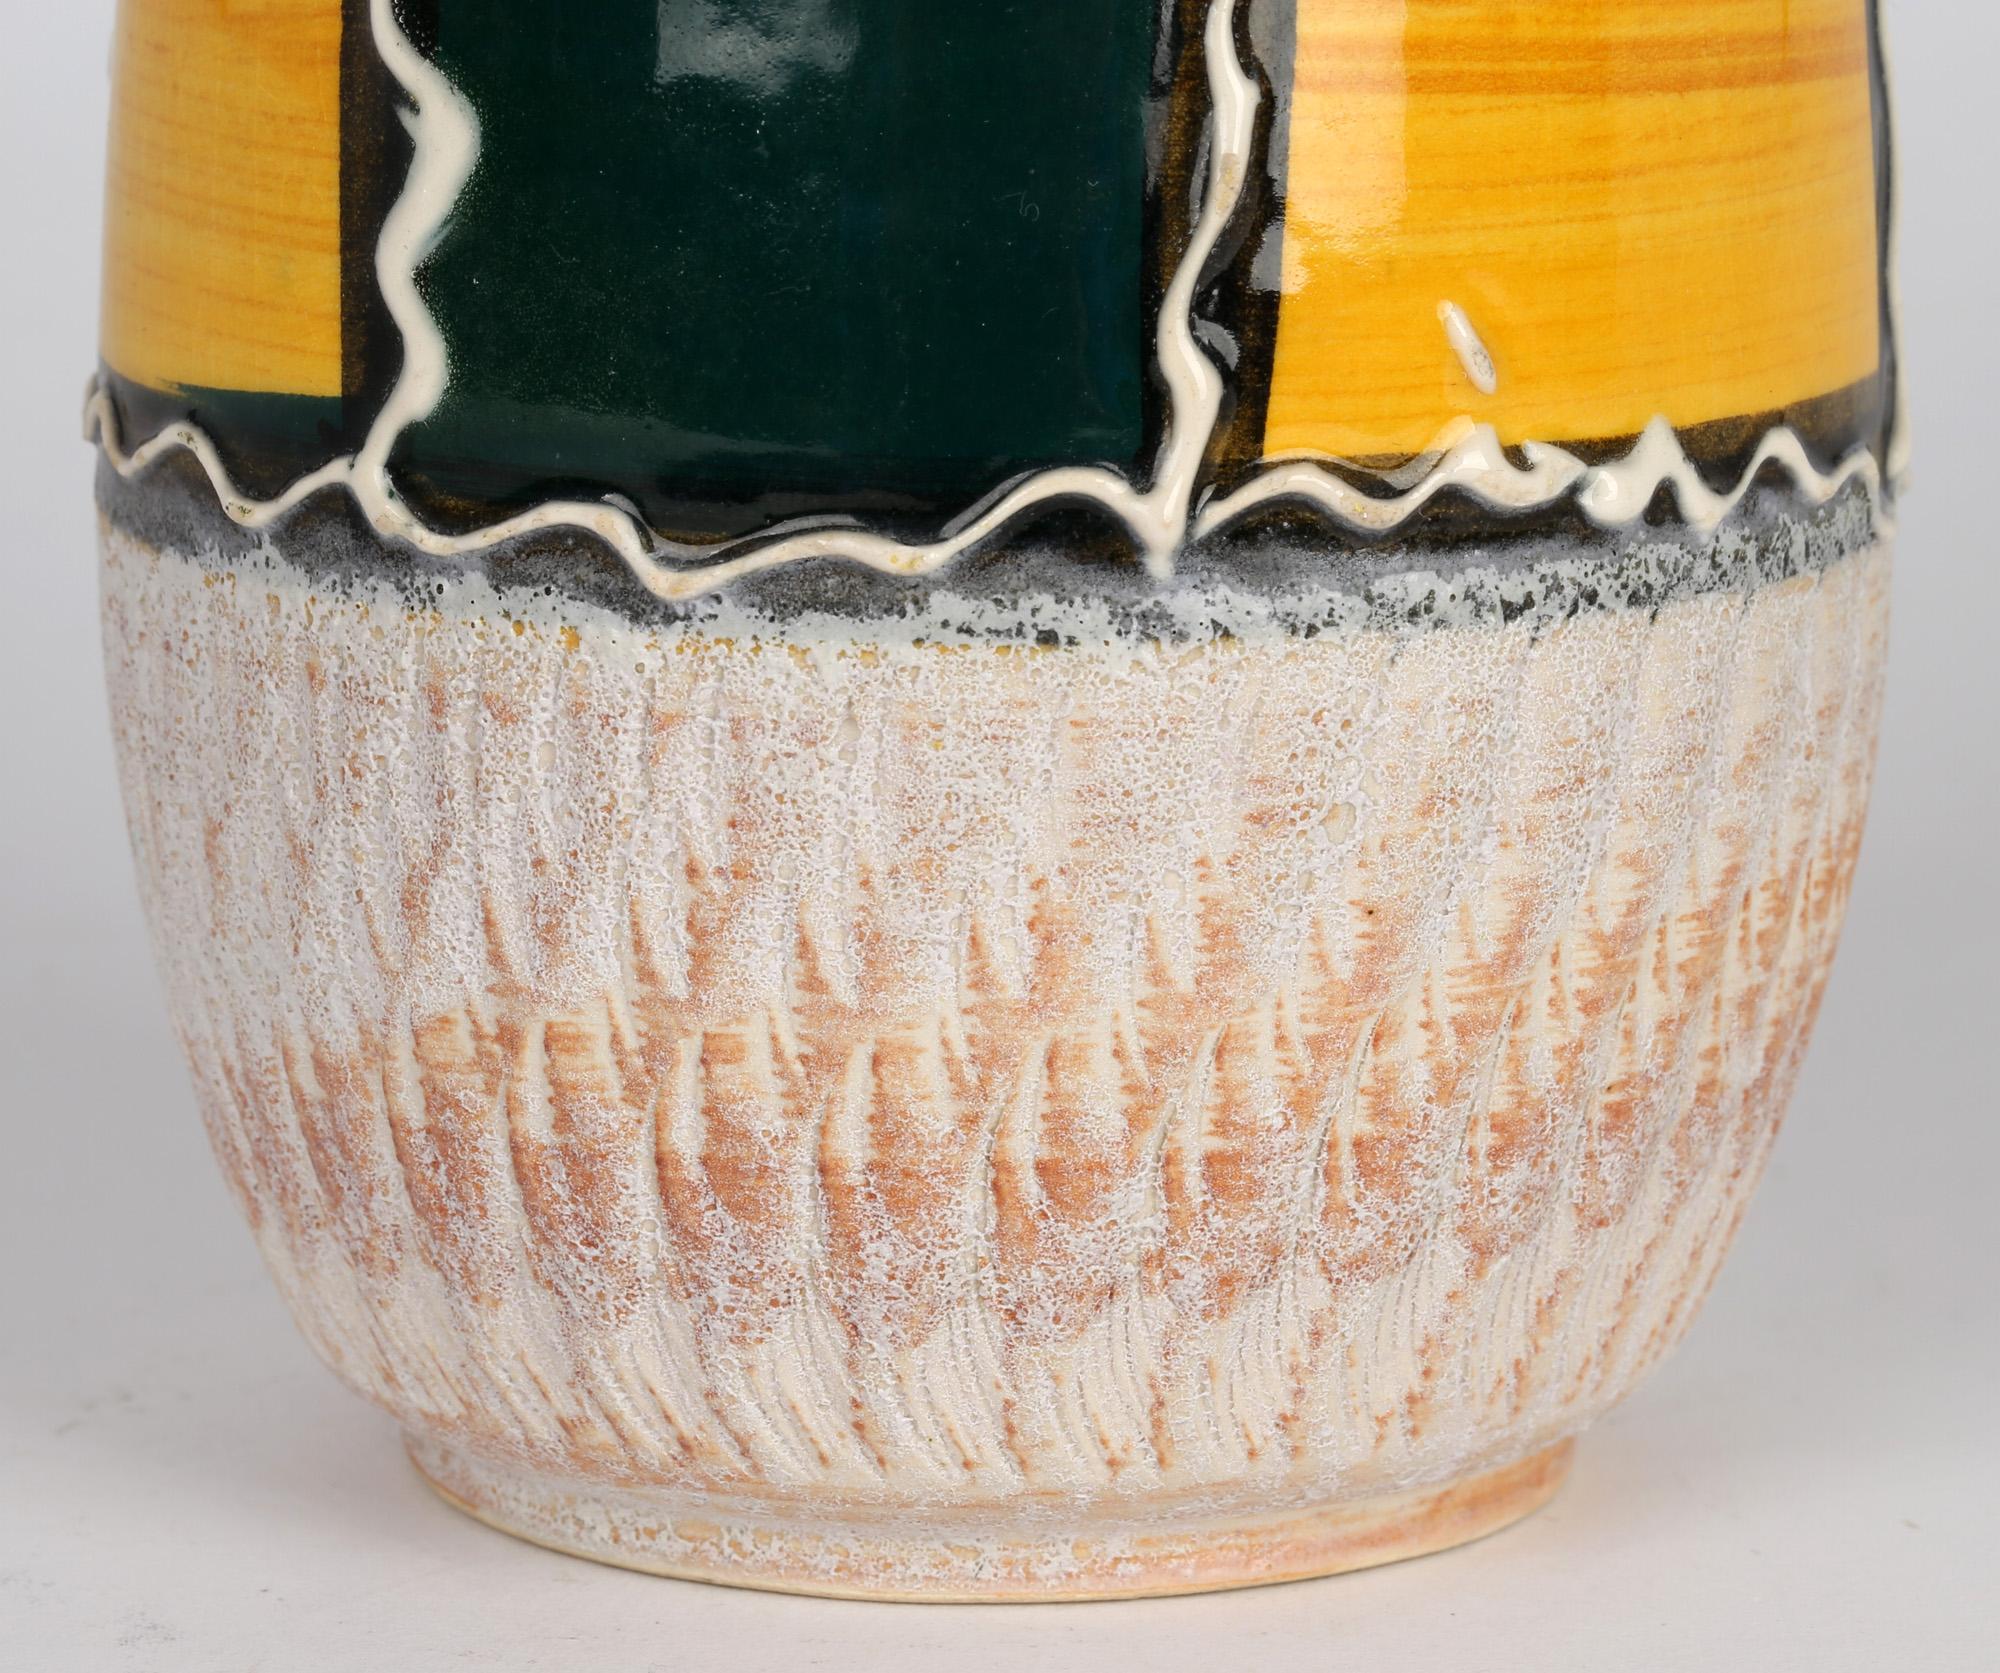 Très élégant vase en poterie d'art allemande du milieu du siècle, décoré d'un panneau vert et jaune sur un fond moulé à glaçure mate, par Scheurich Keramik et datant d'environ 1960. Le vase, réalisé dans une argile de couleur blanche, est de forme